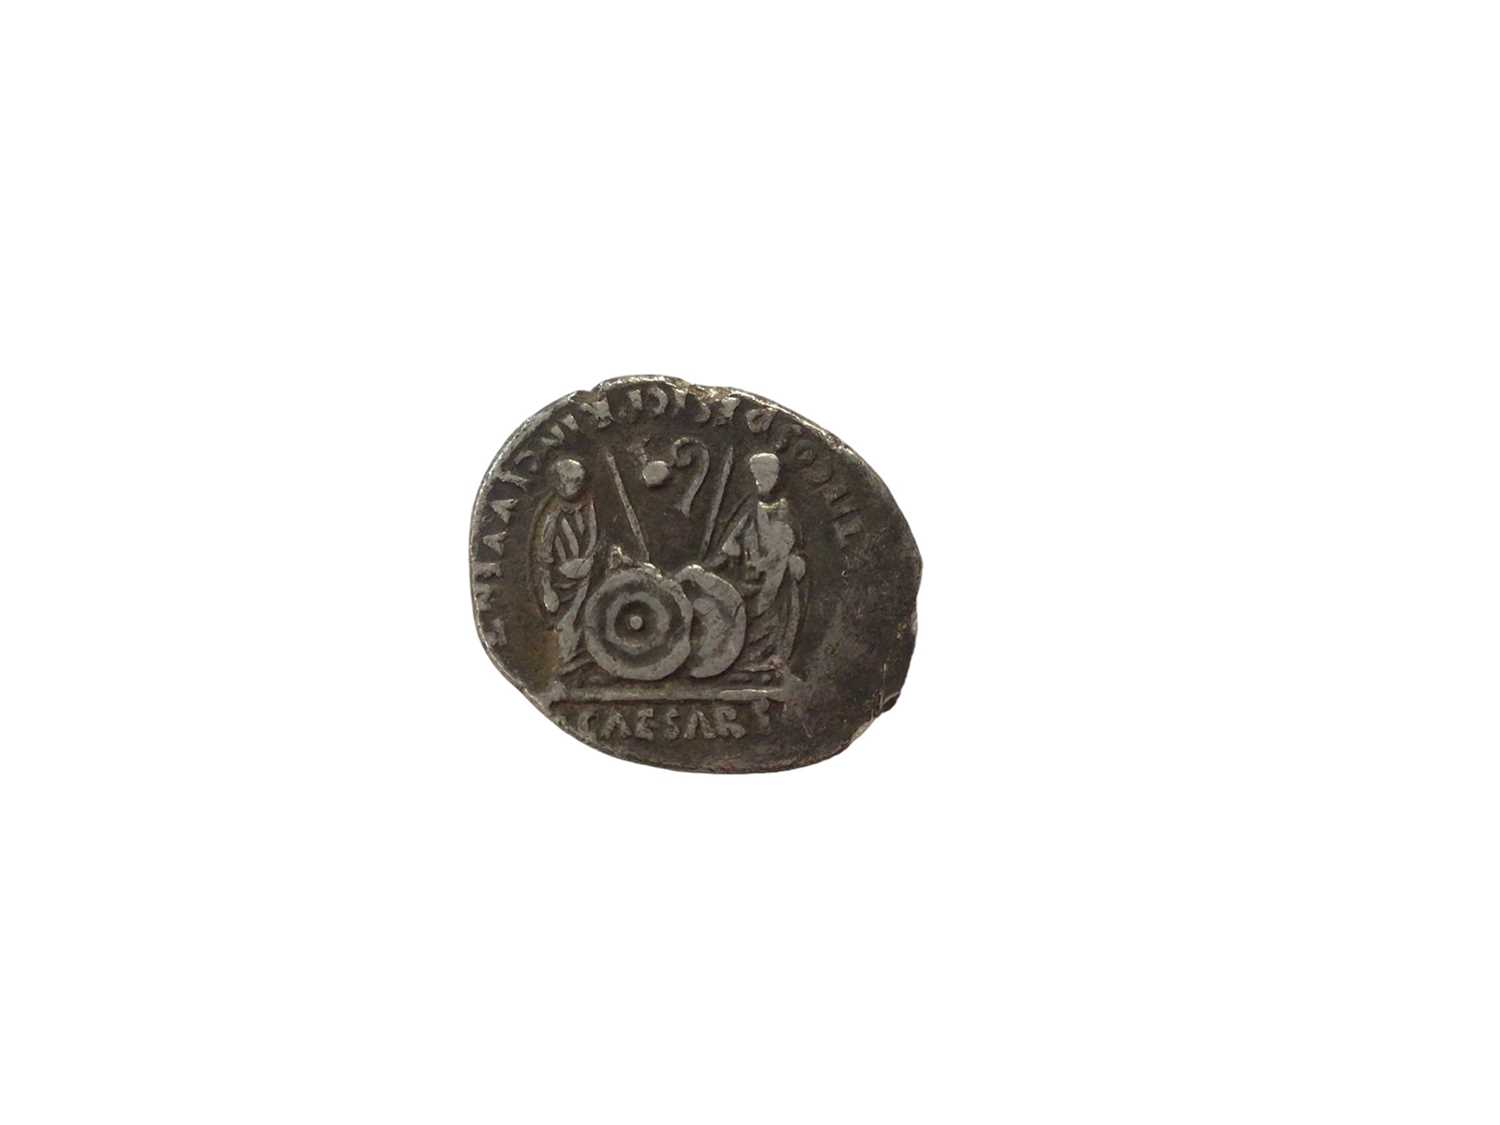 Roman - Silver Denarius Augustus, Mint of Lugdunum 2 BC - AD 4 Rev: Gaius & Lucius Caesars standing - Image 2 of 2